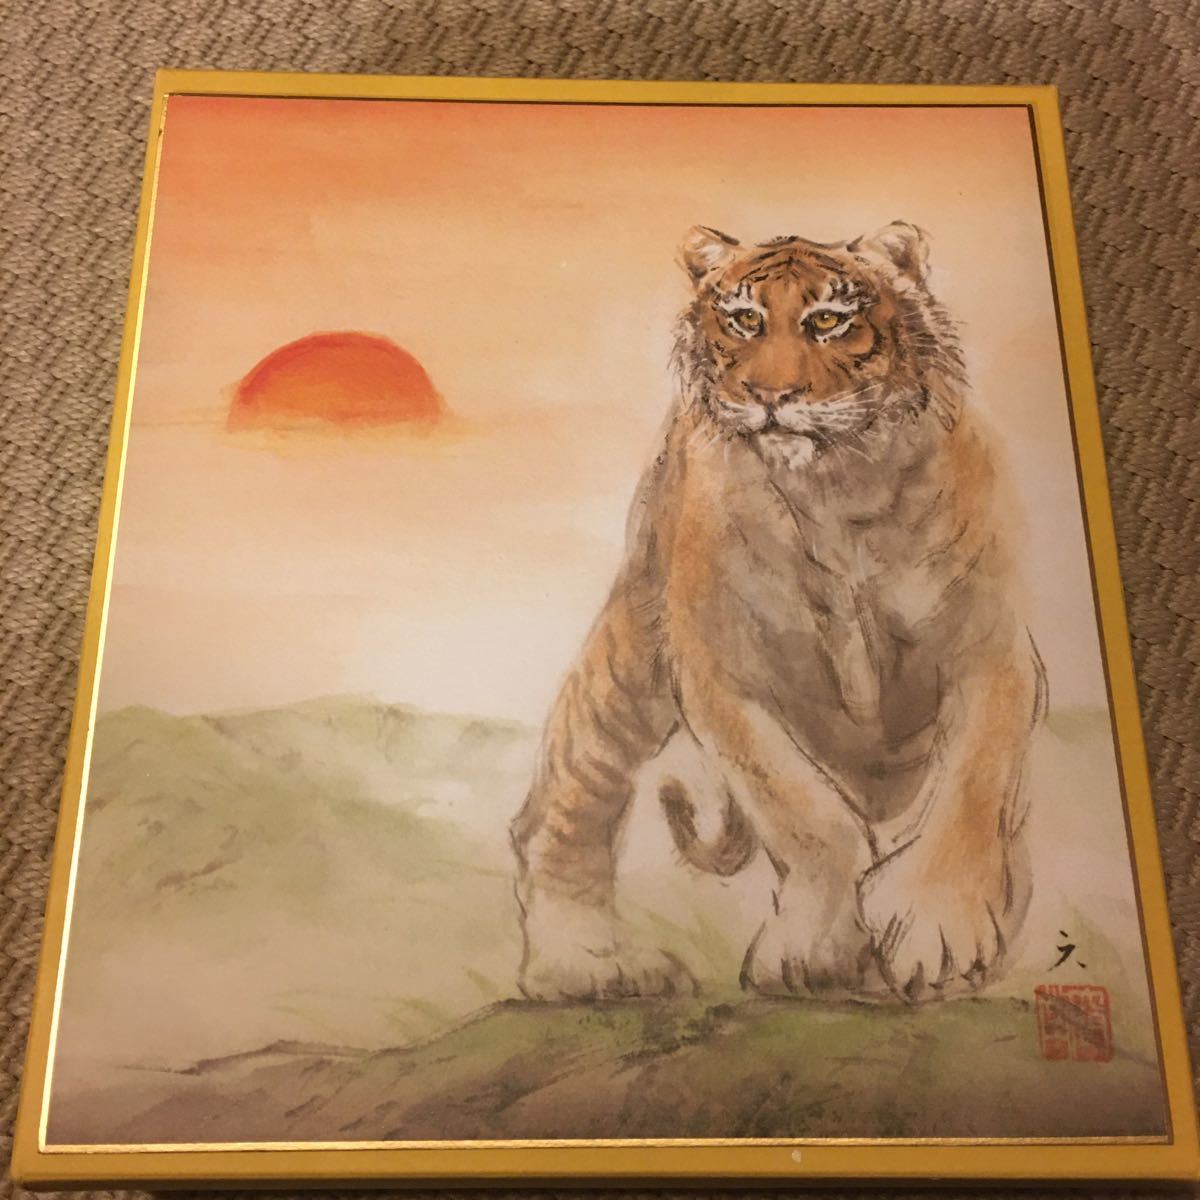 Achetez-le maintenant Fujiwara Rokugendo Papier coloré du zodiaque Reproduction de tigre Peinture sur papier coloré Peinture japonaise Tigre du zodiaque Frais d'expédition \ 230, ouvrages d'art, livre, papier coloré